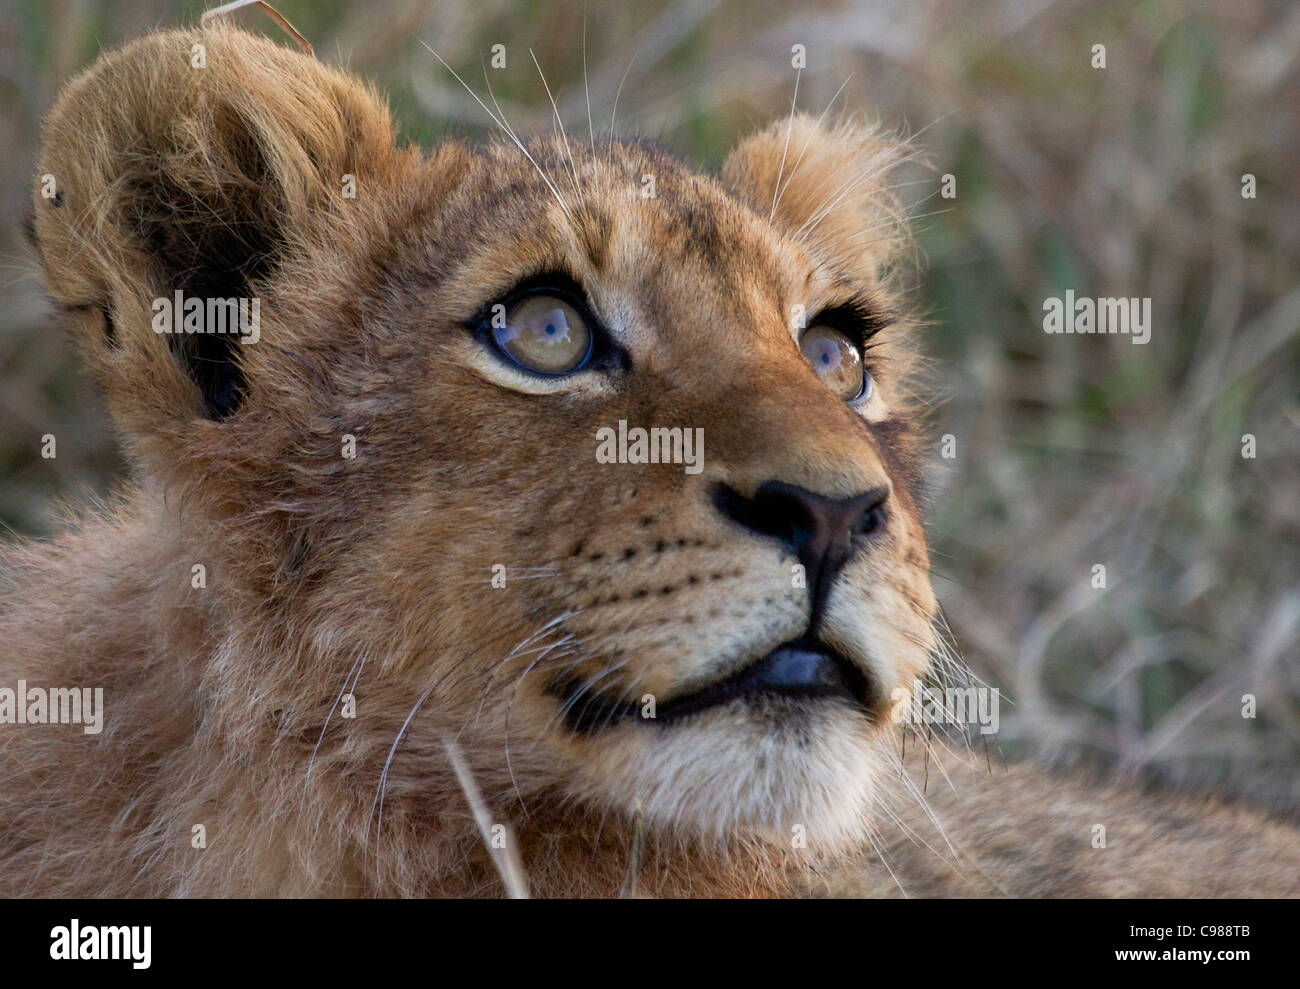 Apretado retrato de un cachorro de león Foto de stock